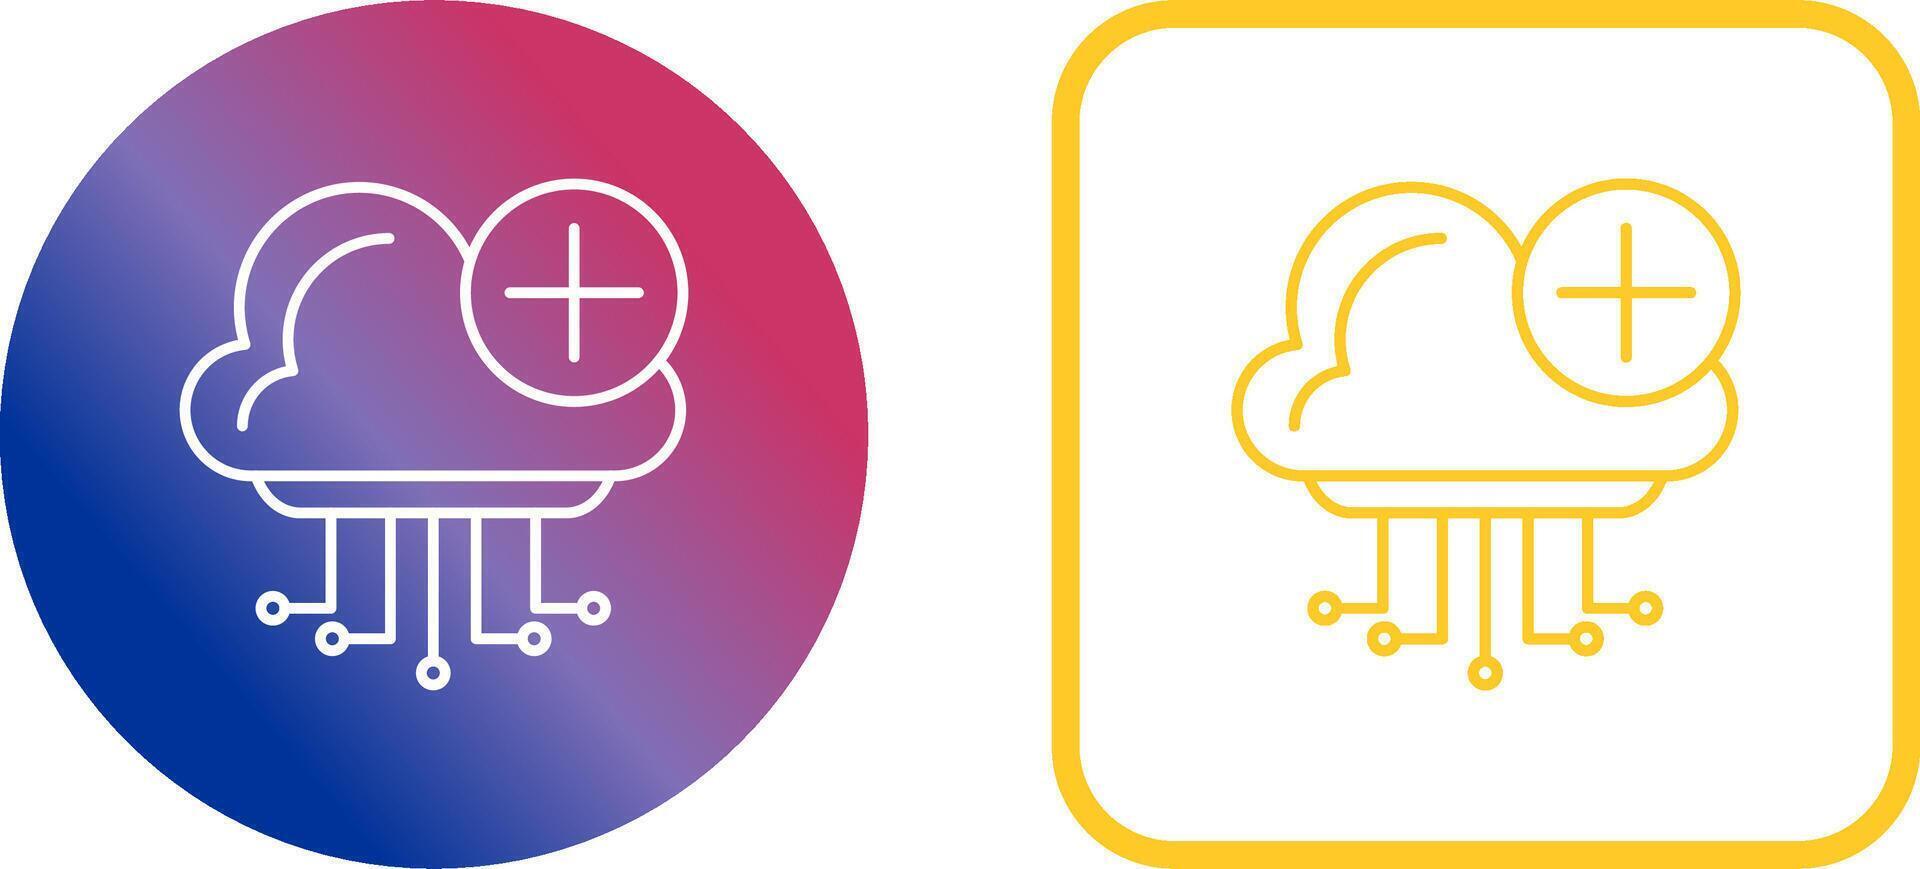 Cloud Computing Icon Design vector